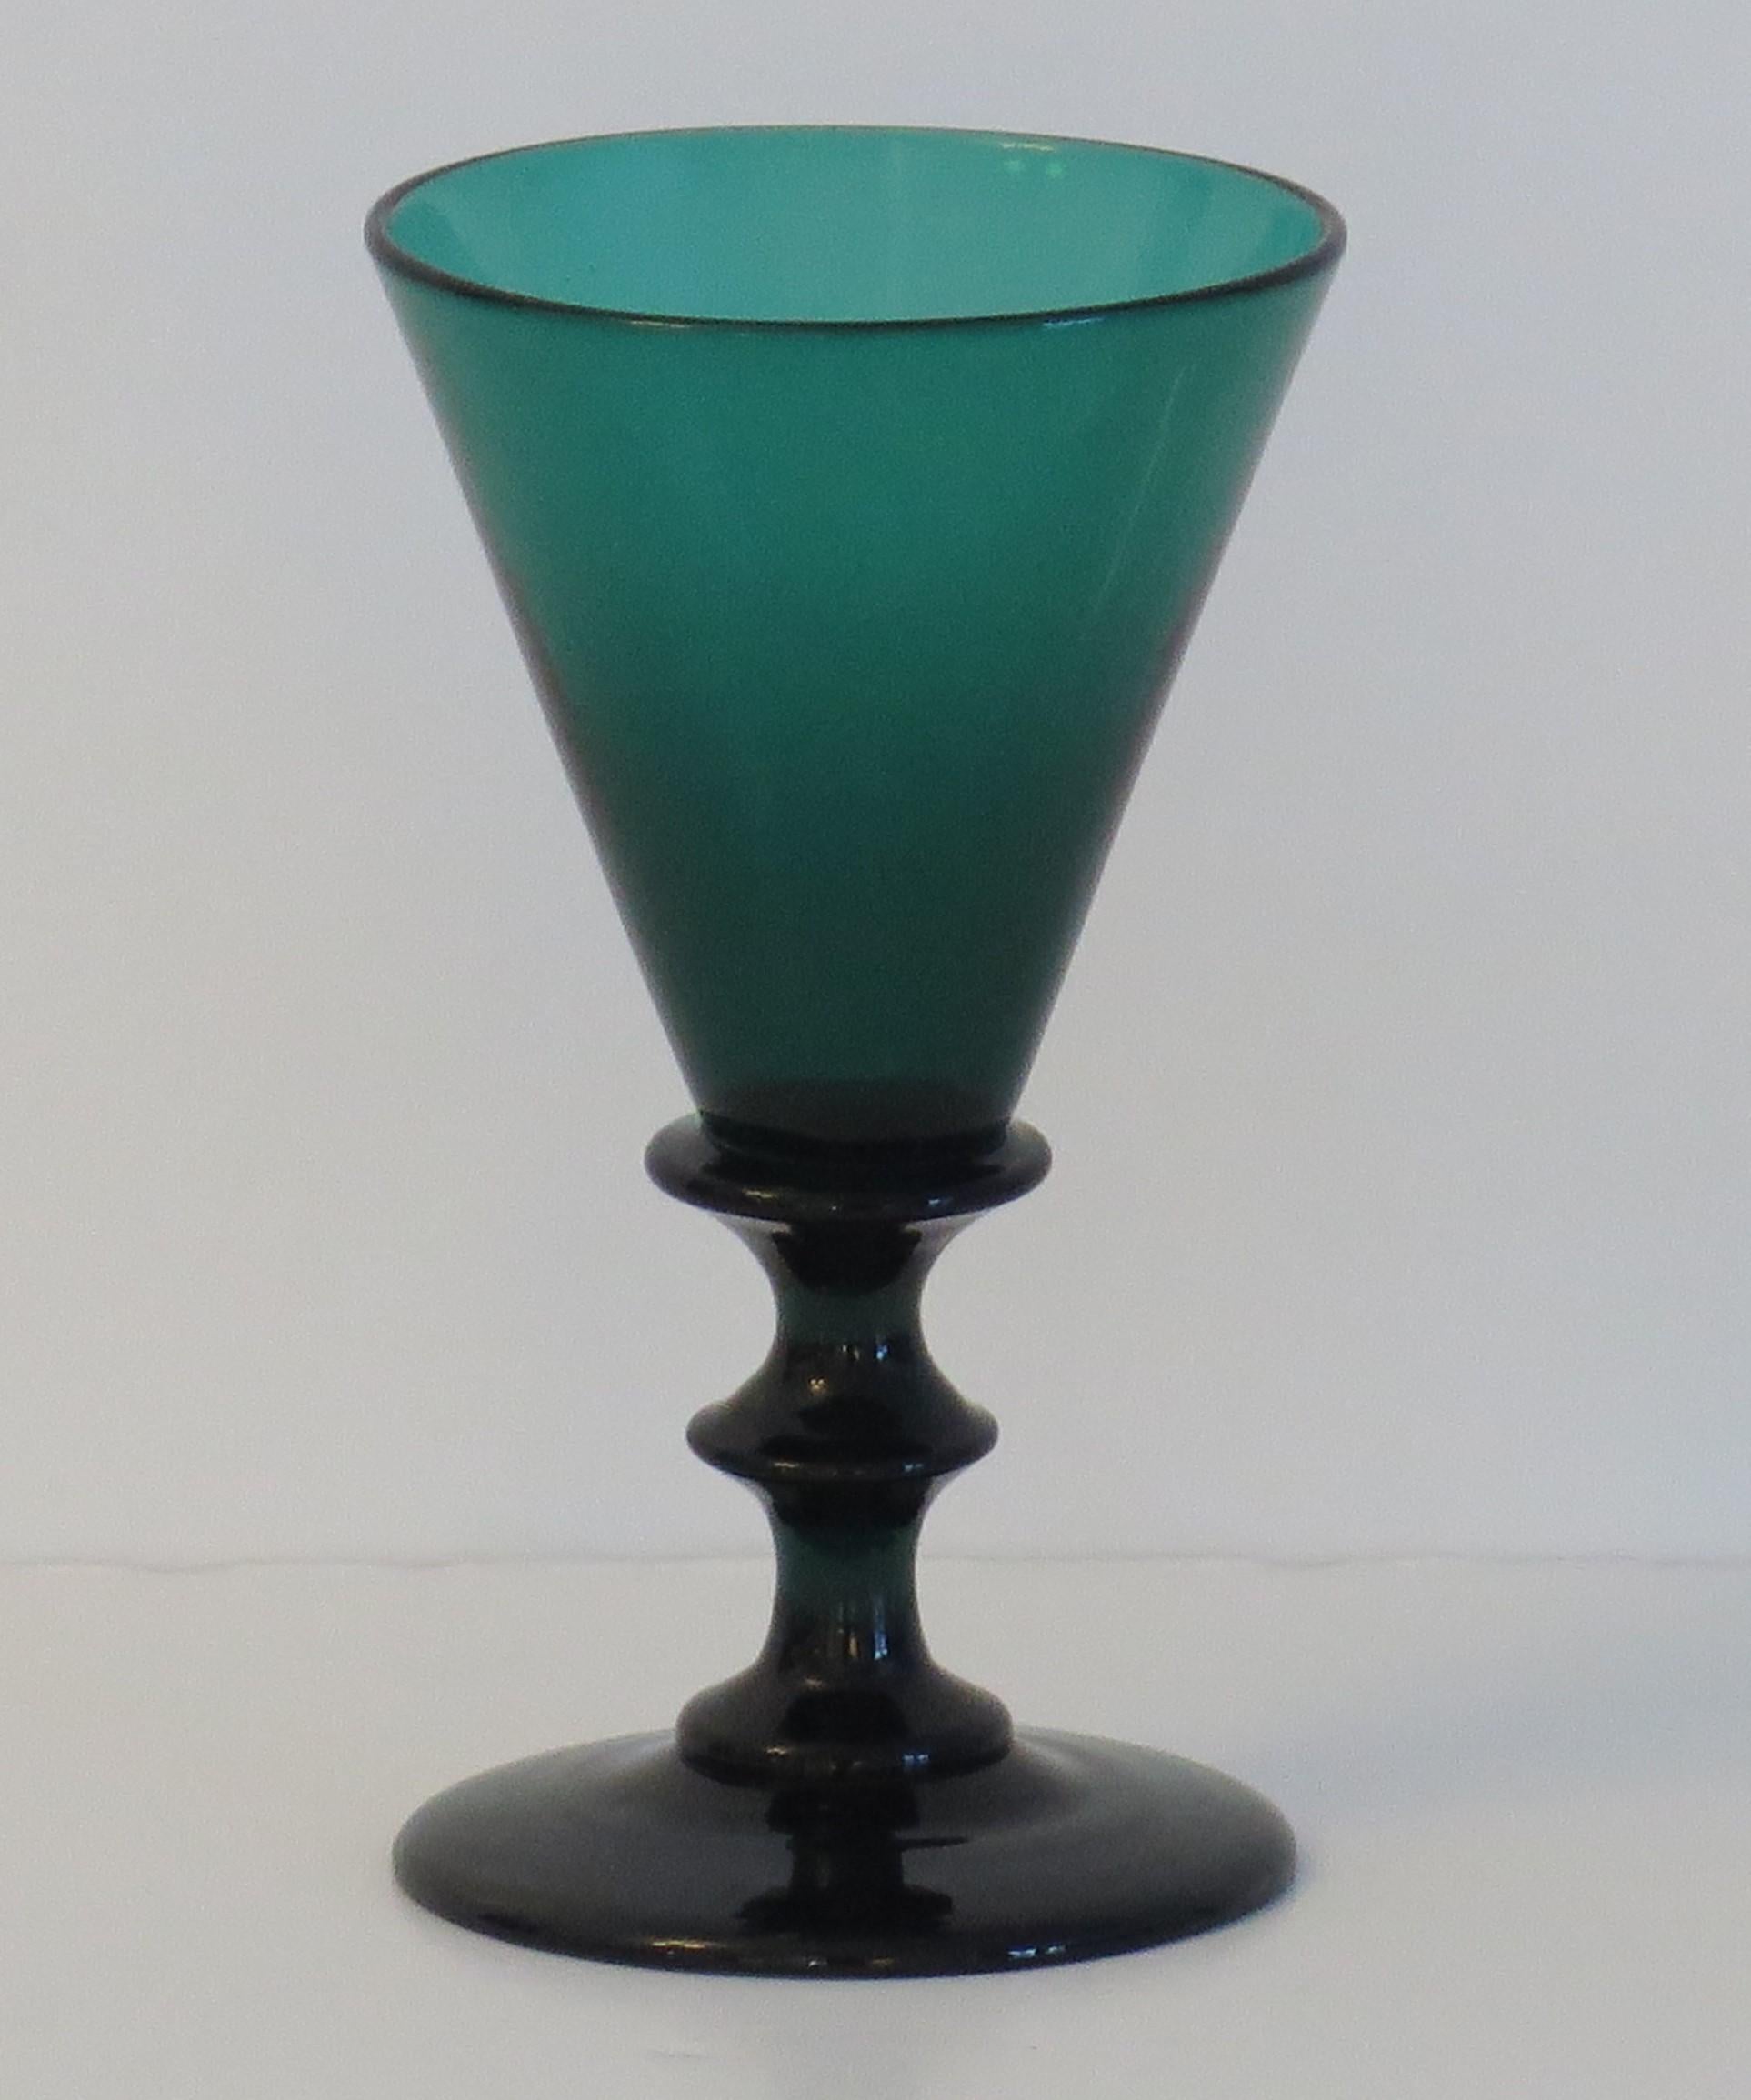 Se trata de un excelente ejemplo de copa de vino verde de Bristol, soplada a mano, inglesa, de principios del siglo XIX, que fechamos en el periodo de Regencia de Jorge 111, hacia 1815.

Este vaso tiene un elegante cuenco cónico con un gollete en el